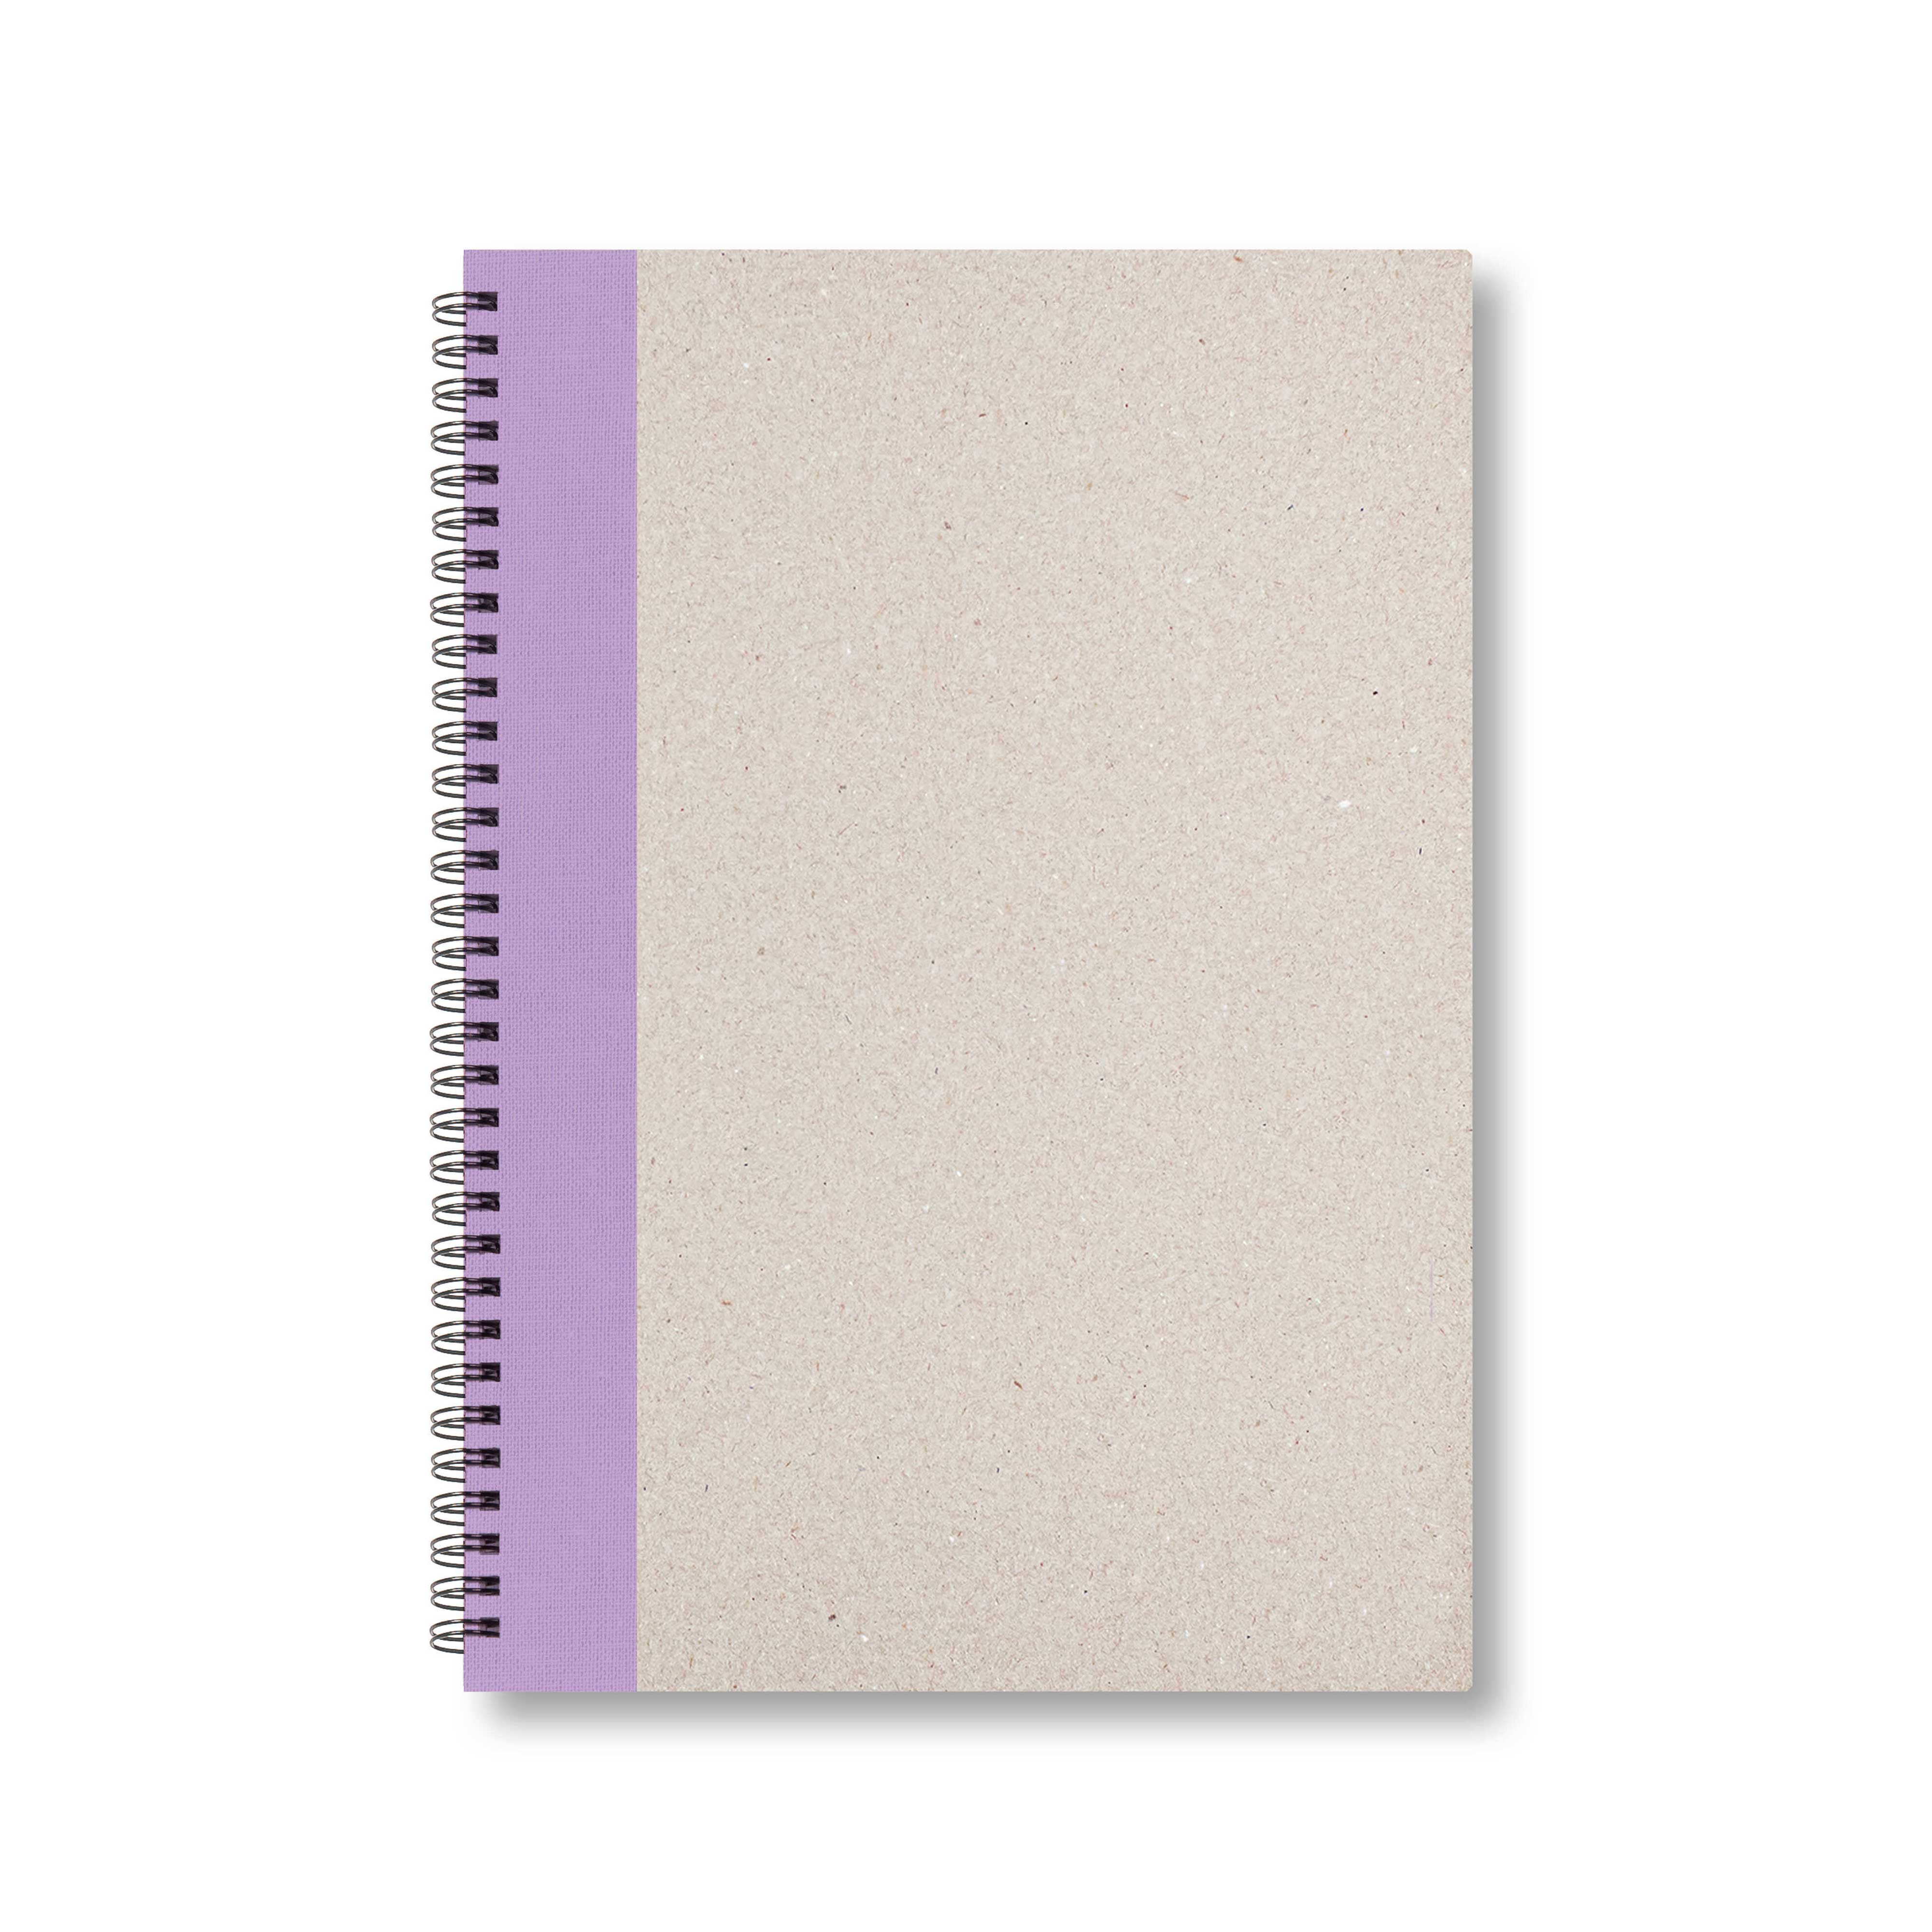 BOBO Zápisník, B5, čtverečkovaný, fialový, konfiguruj si obálku